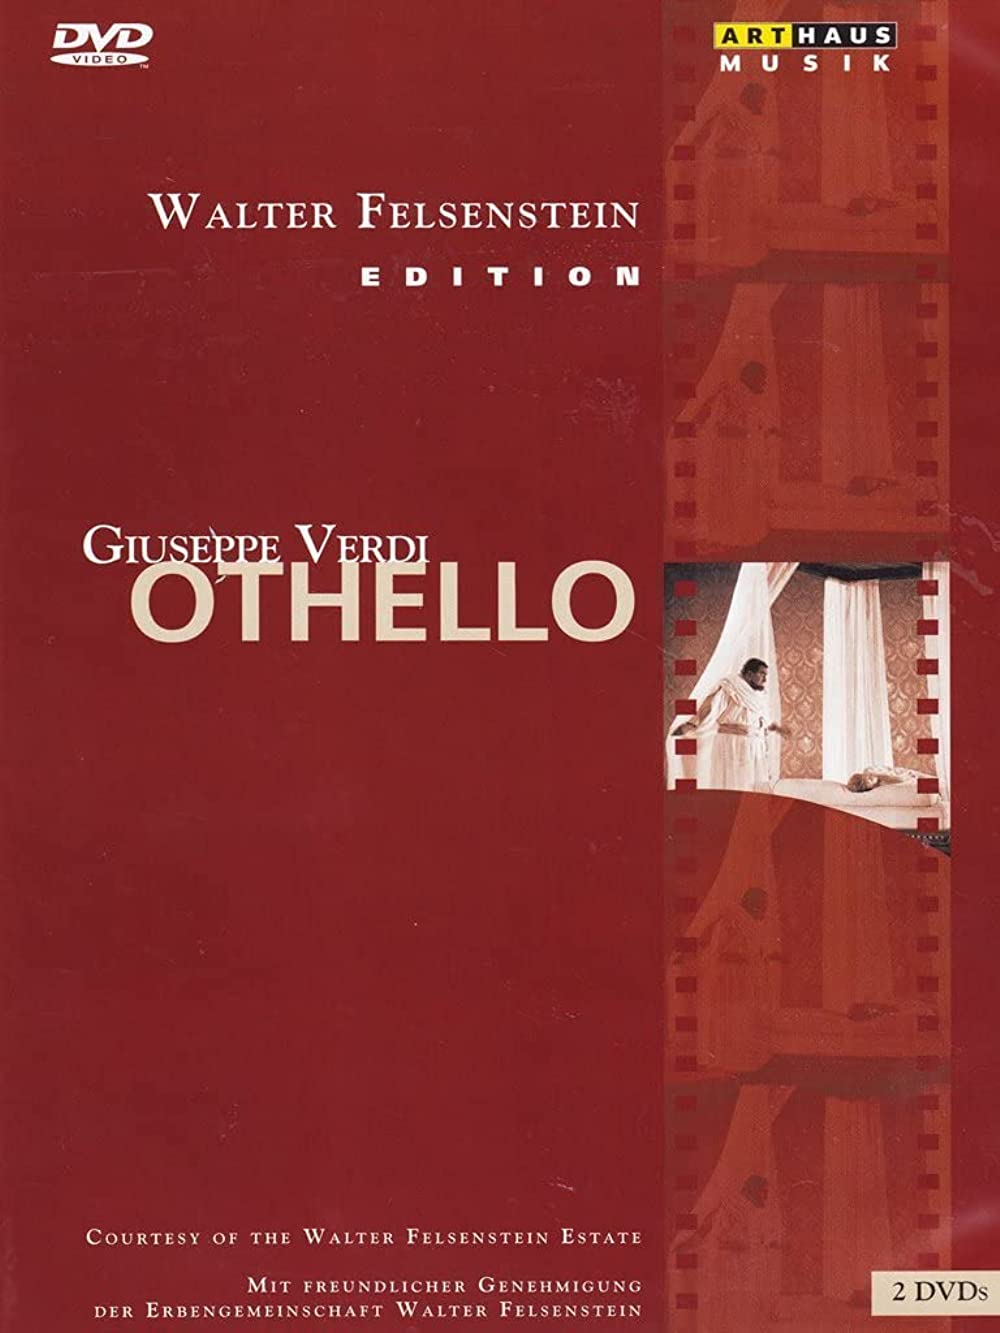 Filmbeschreibung zu Othello (1969)